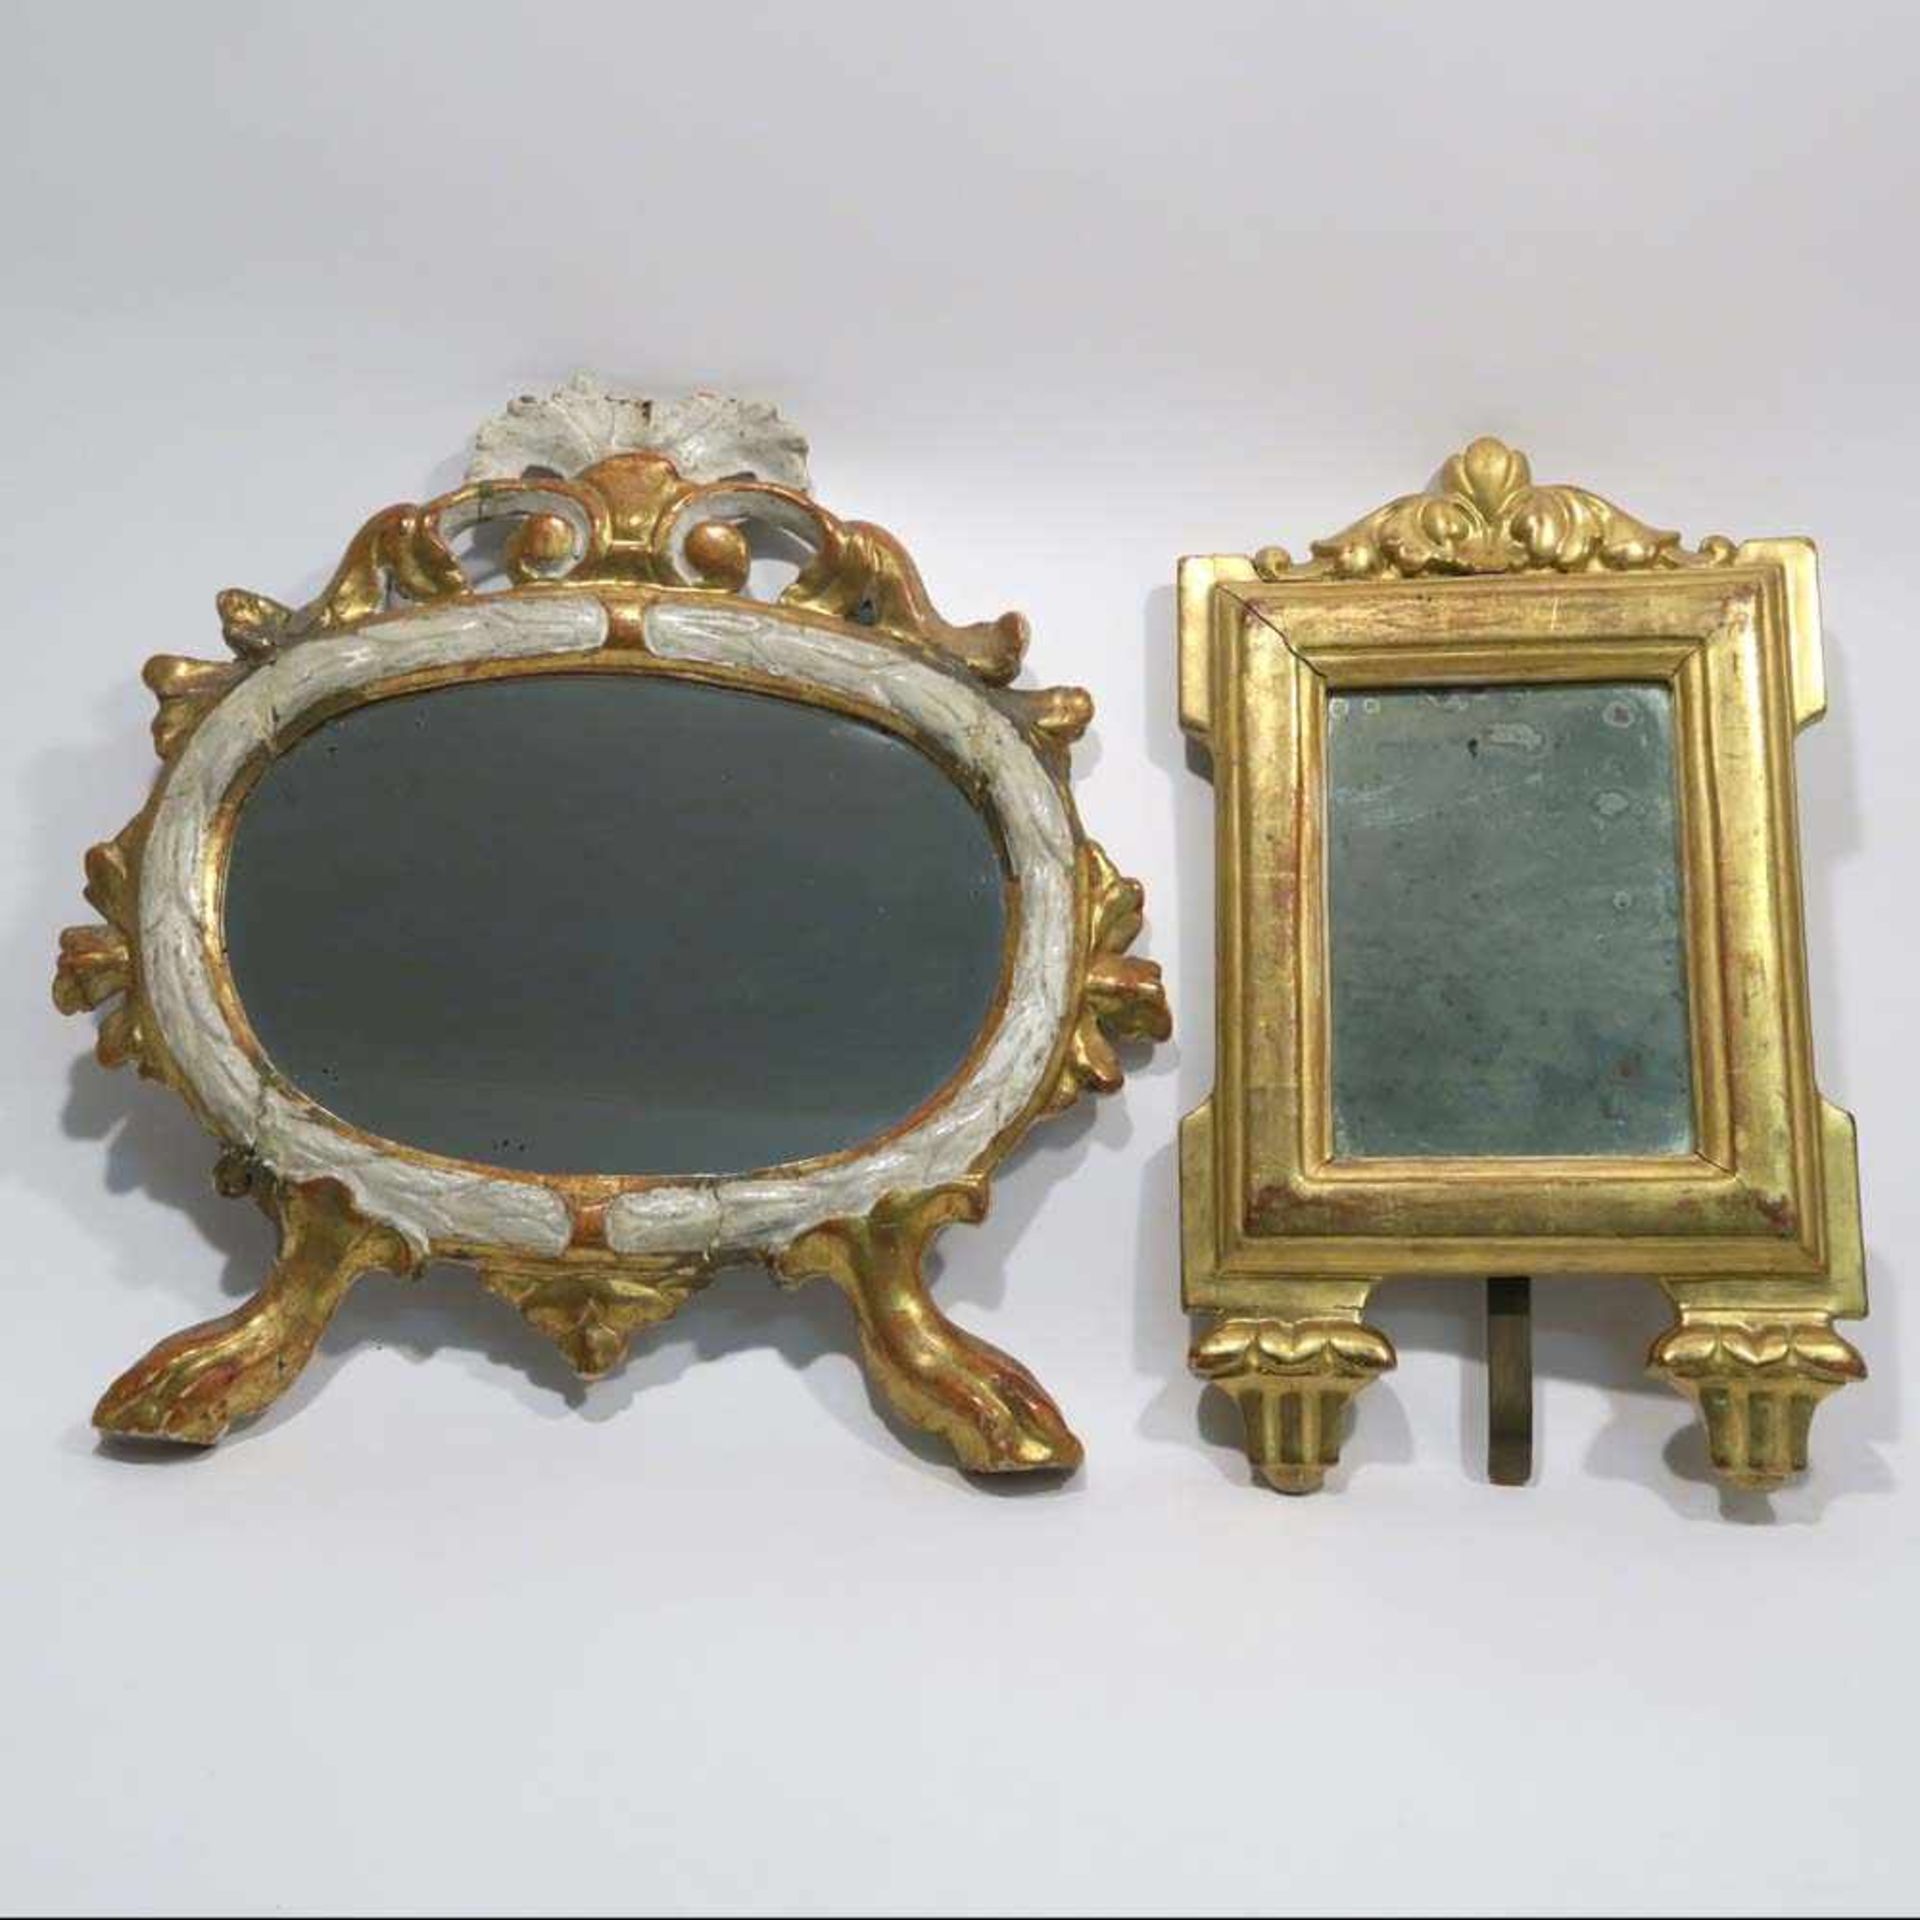 Zwei SpiegelHolz, beschnitzt, gold bzw. weiß gefasst. Hochrechteckig bzw. ovale Form auf Füßen. Tlw.